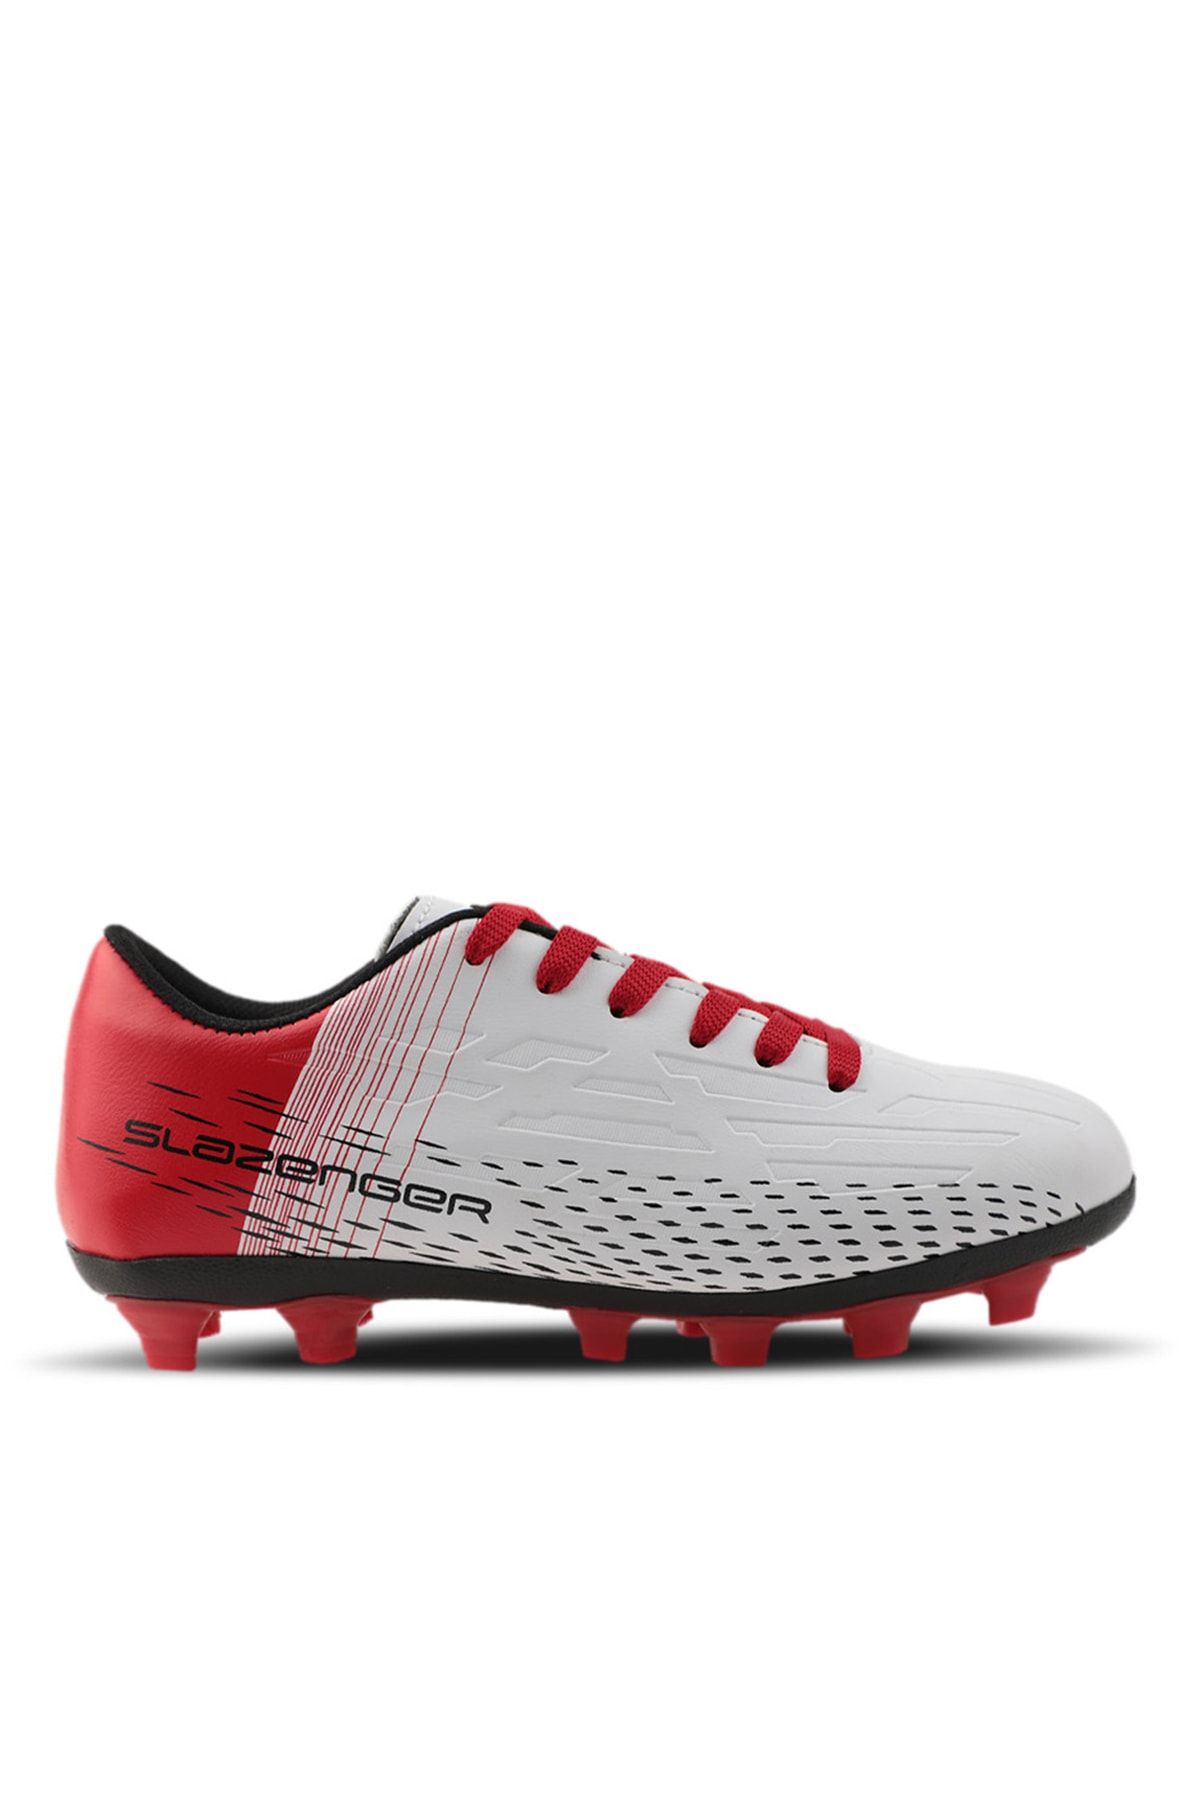 Slazenger Score I Kr Futbol Erkek Halı Saha Ayakkabı Beyaz / Kırmızı